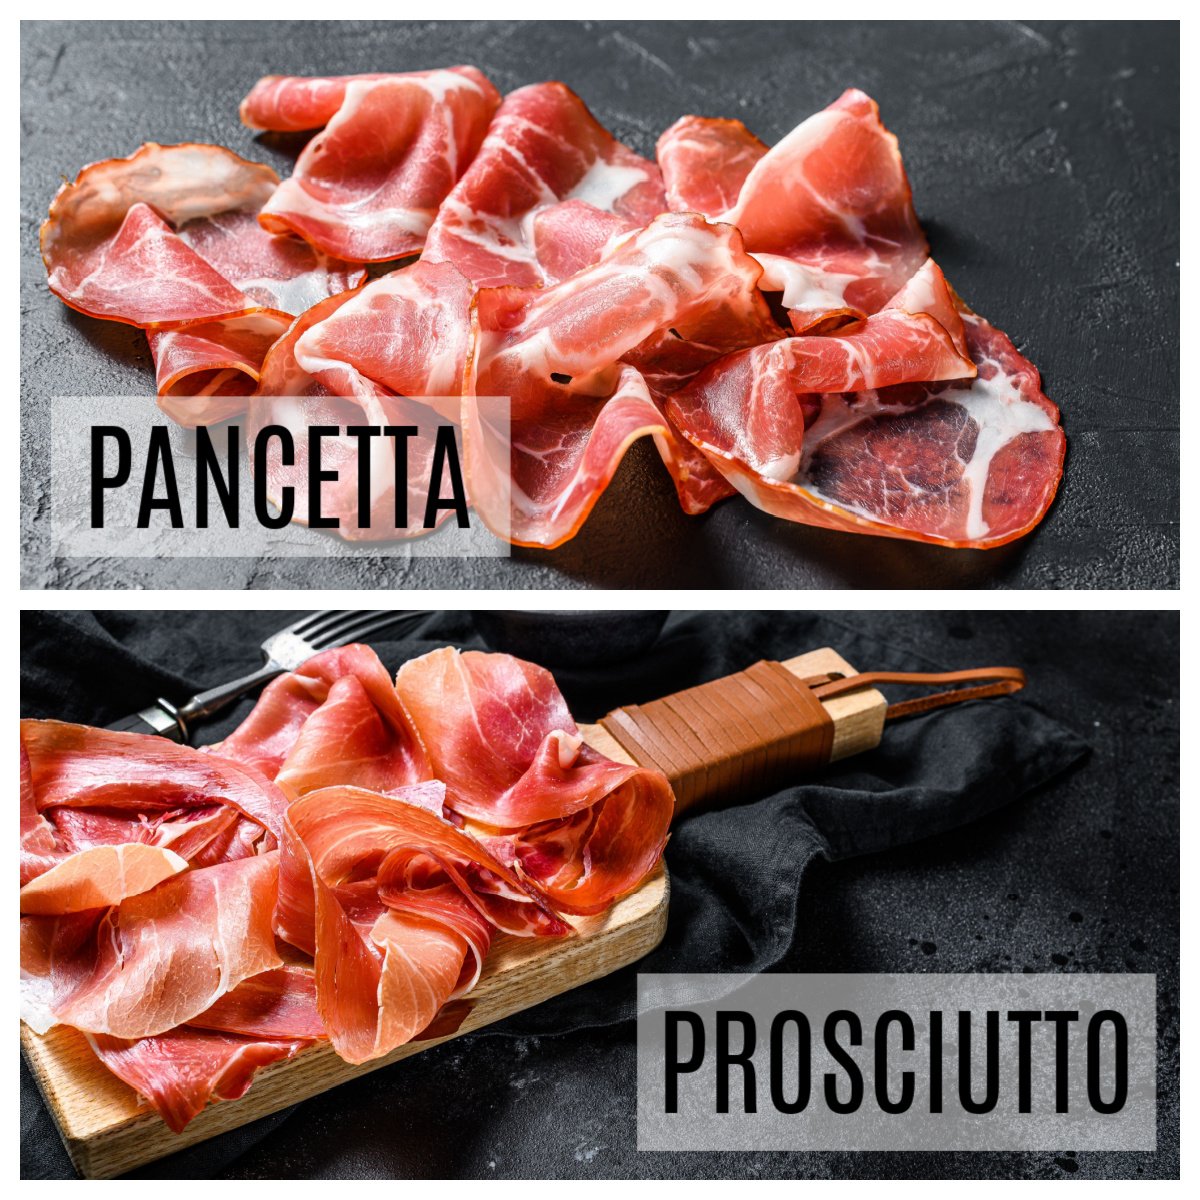 pancetta vs prosciutto differences